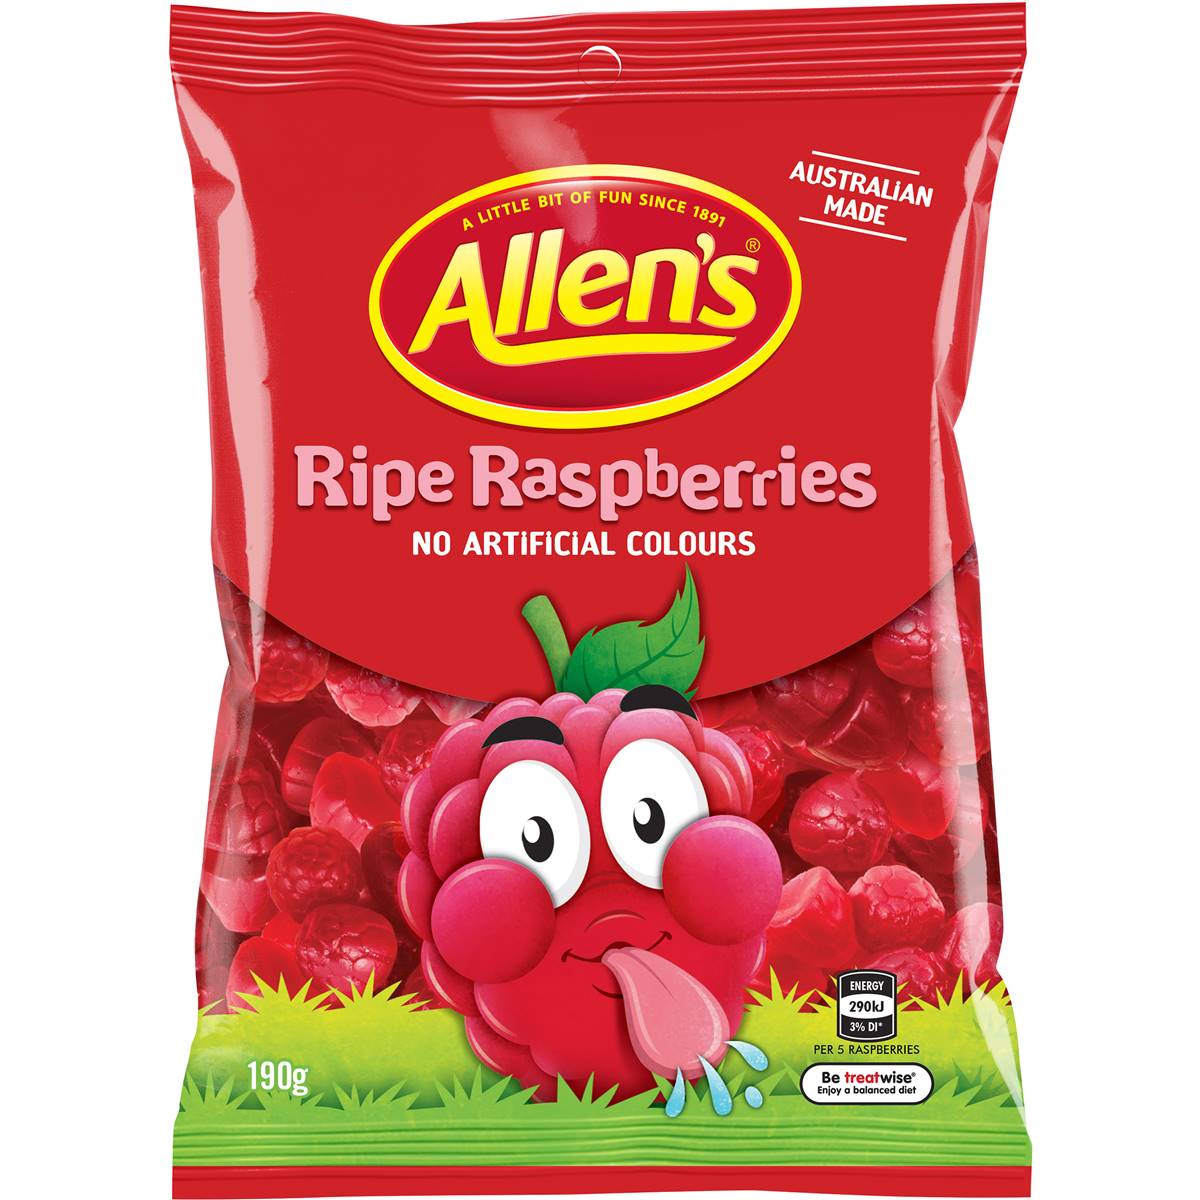 Calories in Allen's Ripe Raspberries Lollies Bag